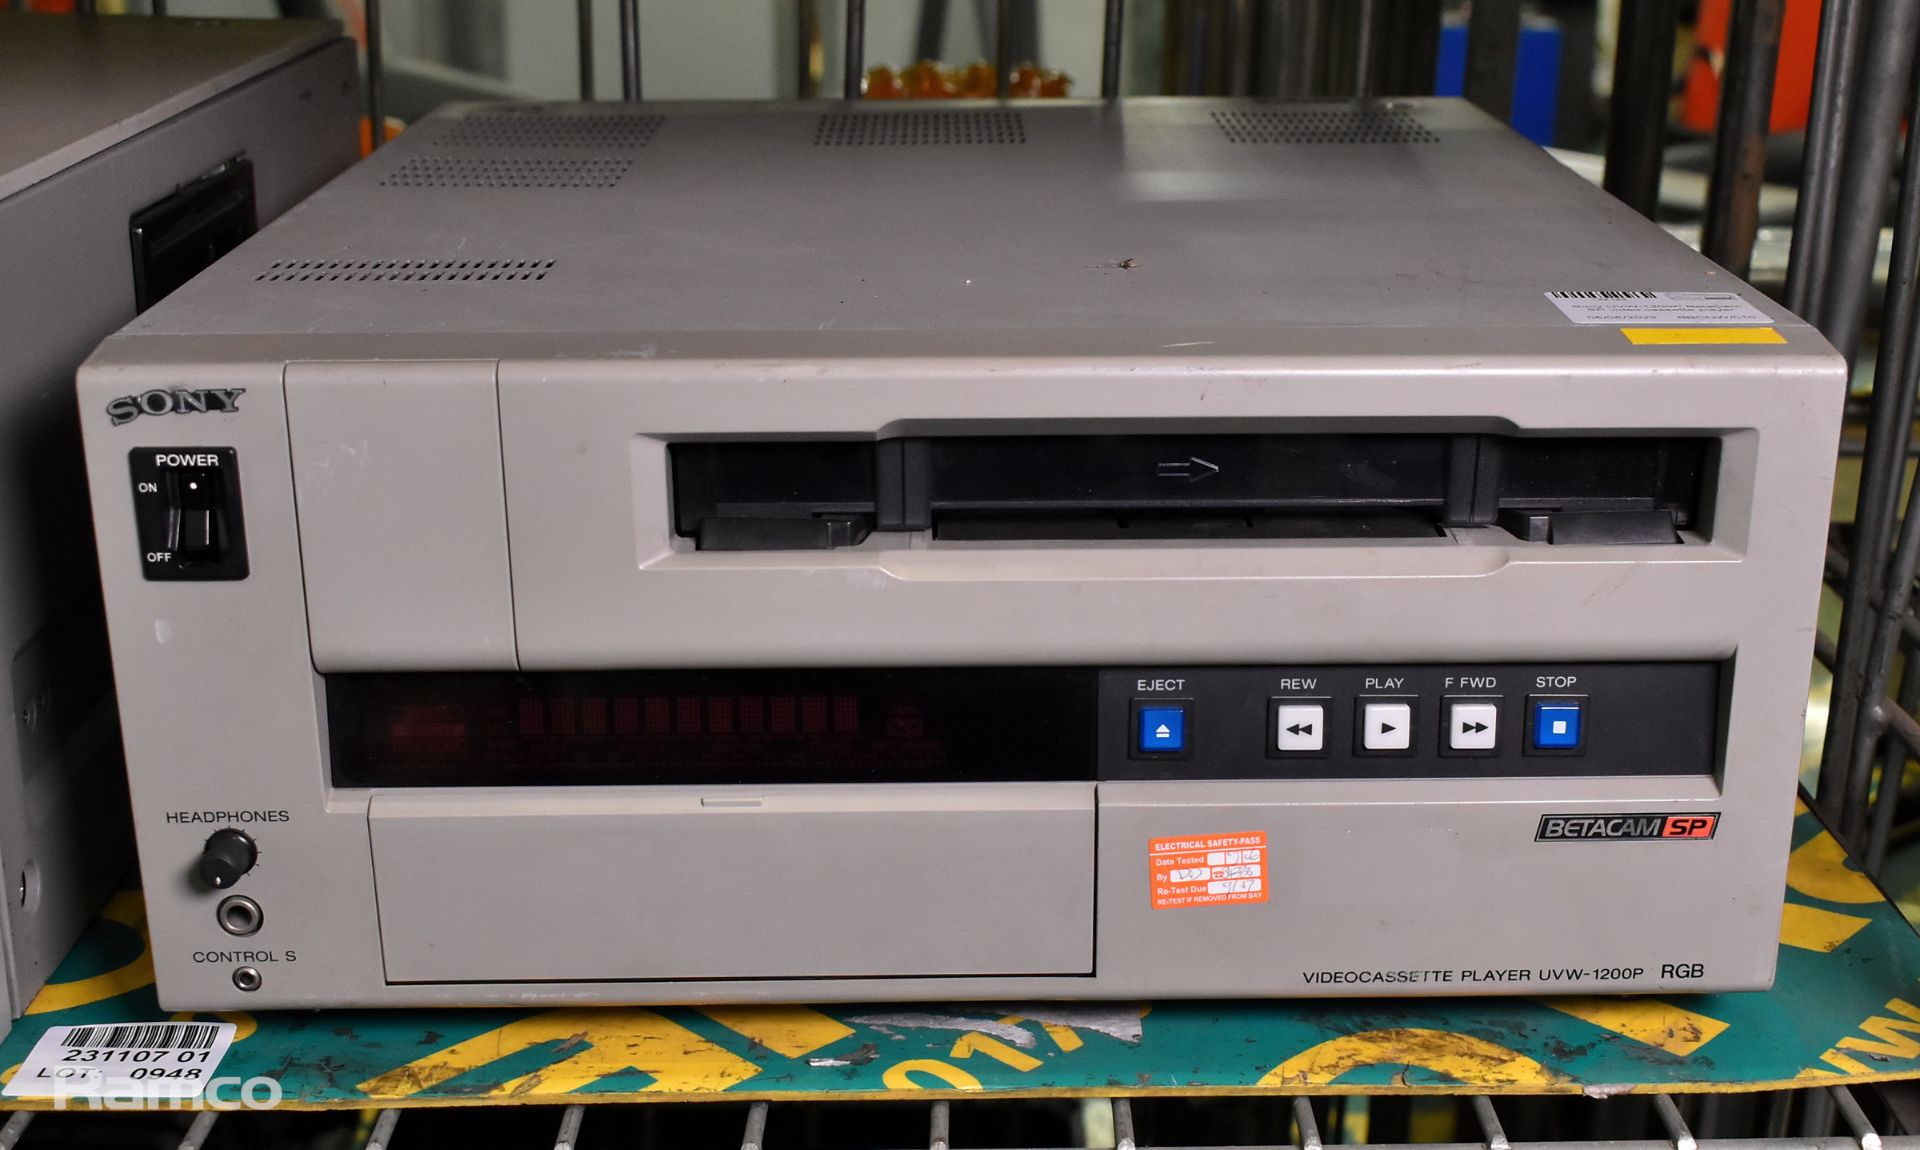 Sony UVW-1200P BetaCam SP video cassette player, Sony BVW-65P BetaCam SP videocassette player SPARES - Image 3 of 3